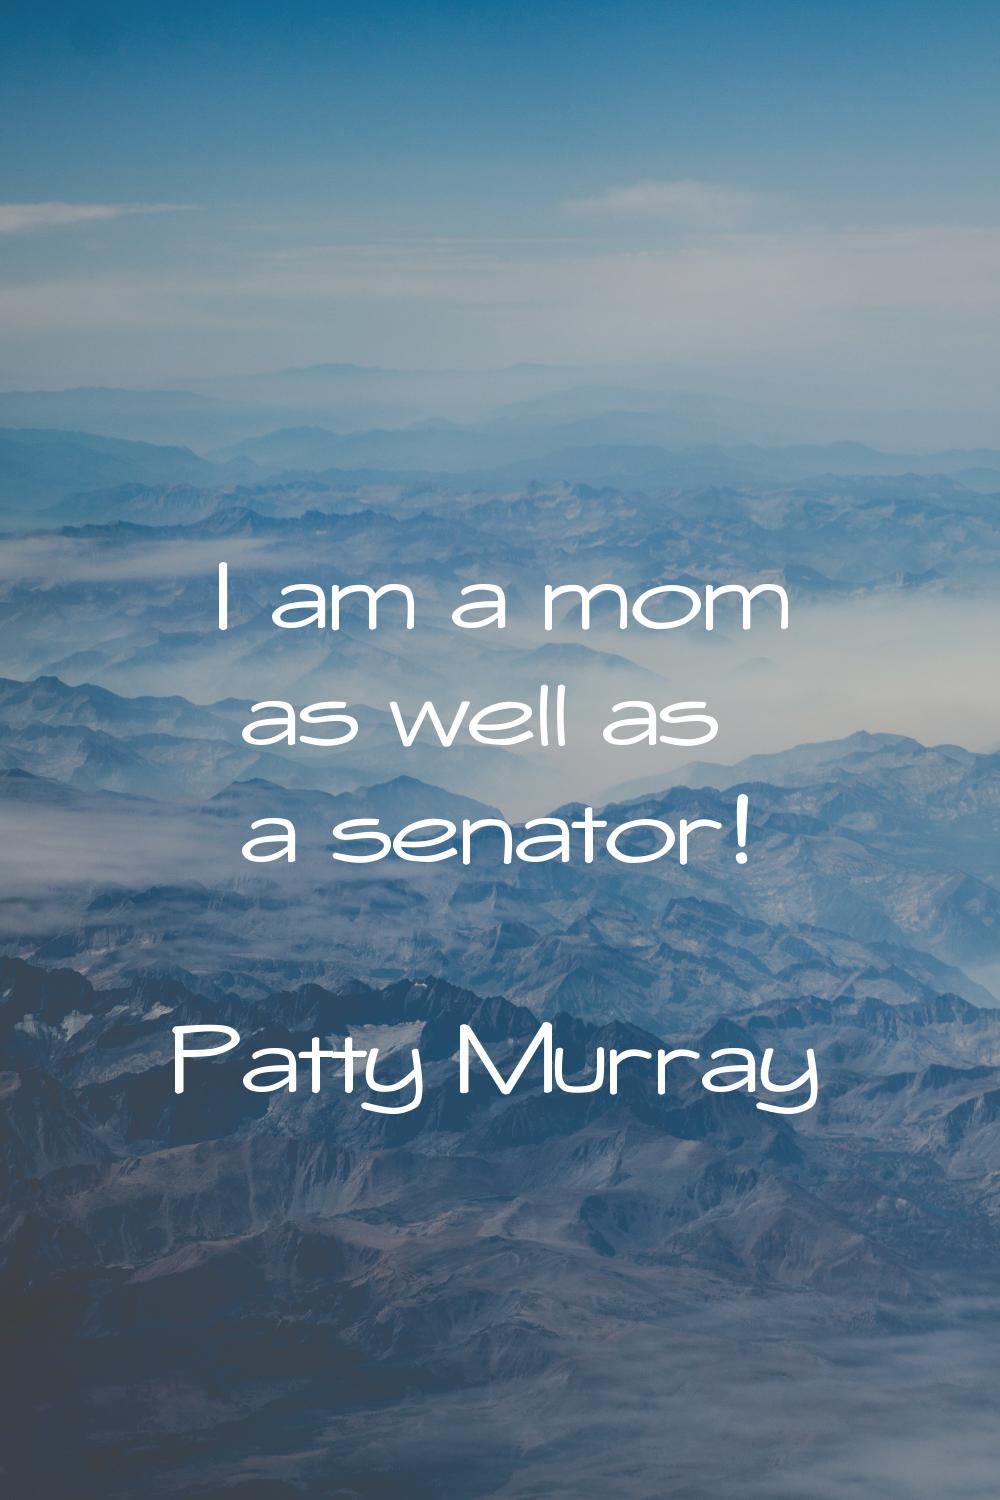 I am a mom as well as a senator!